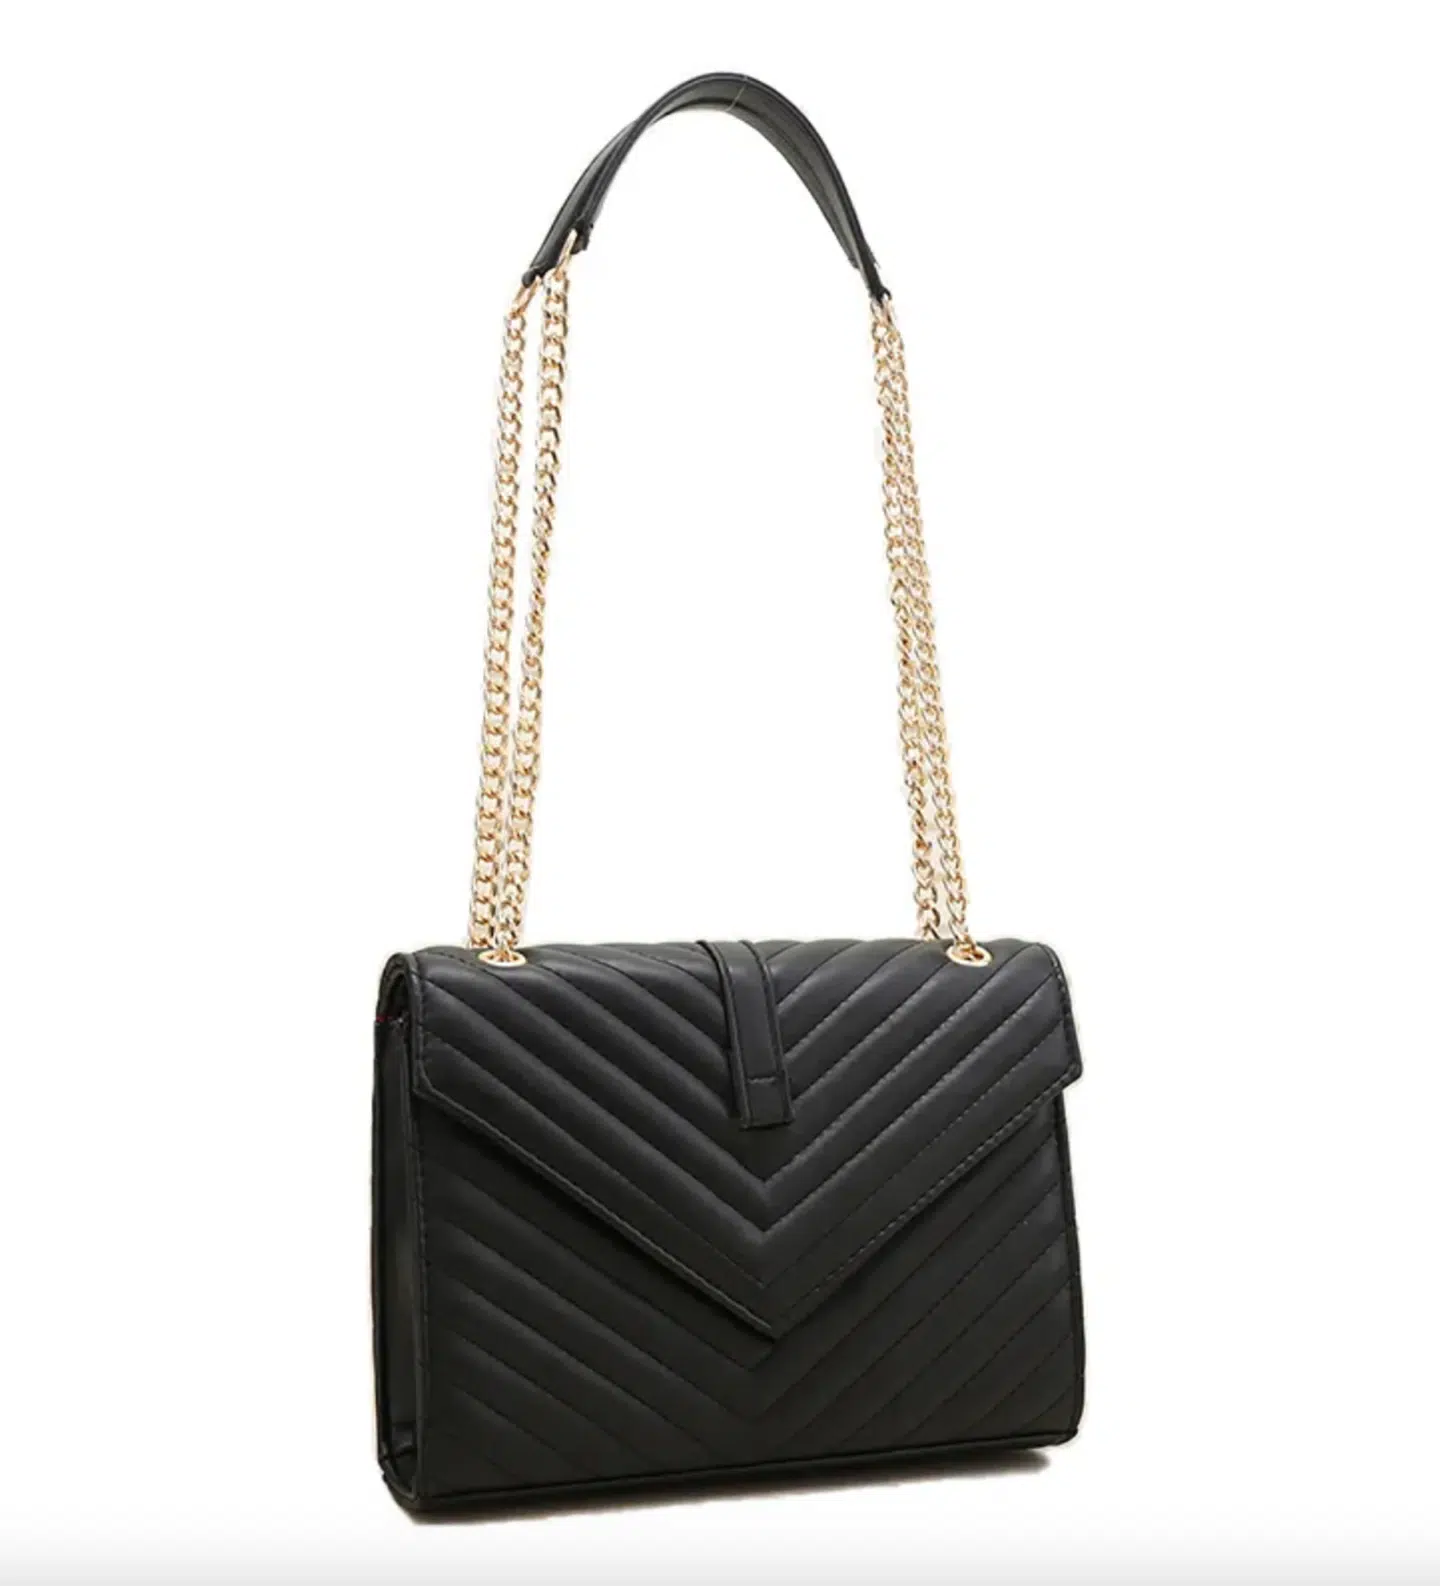 YSL Bag Dupe  Affordable Elegance & Designer Quality